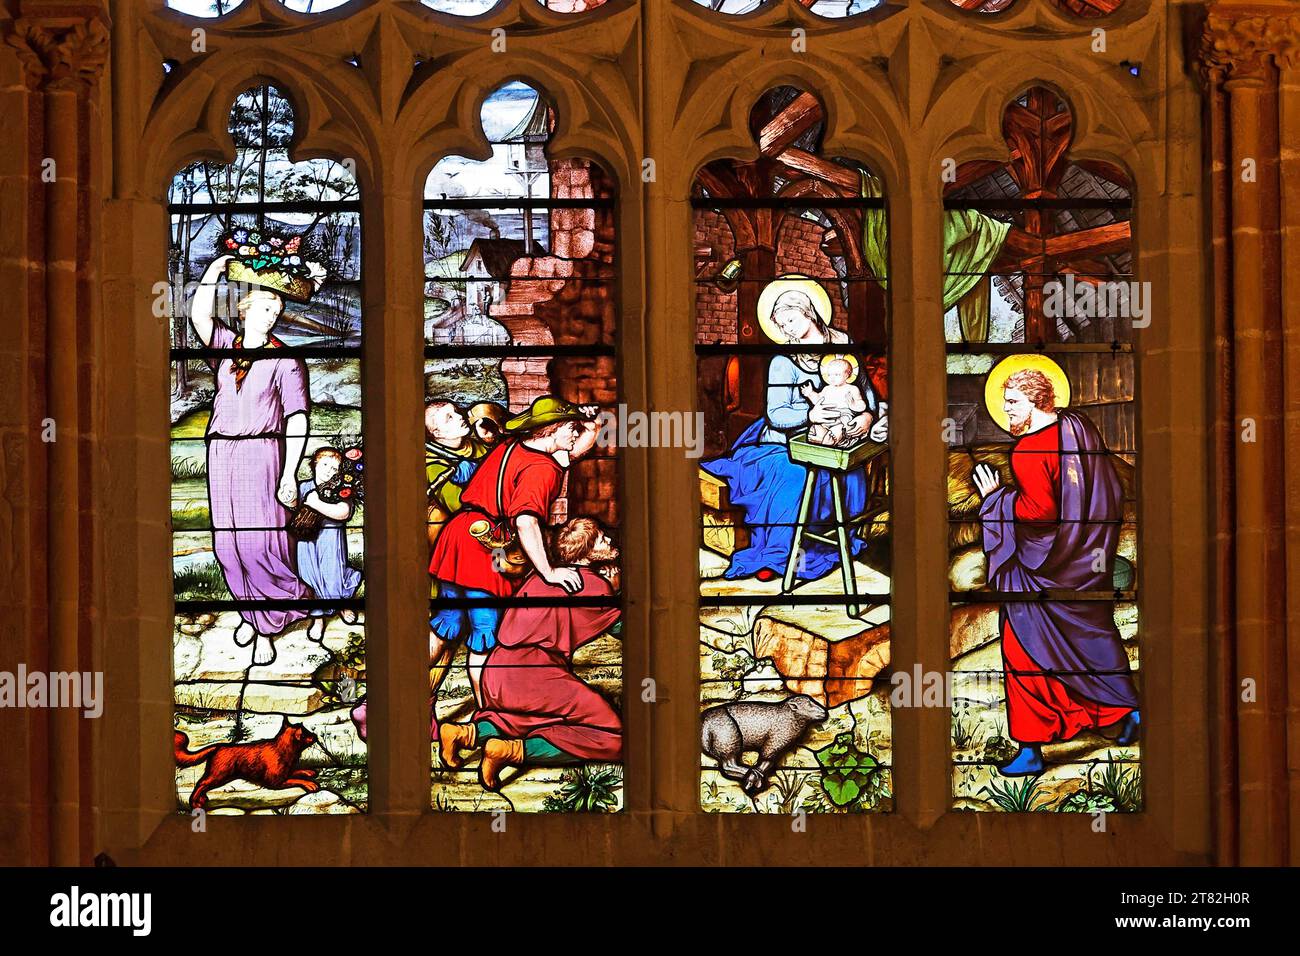 Vitrail coloré représentant la naissance de Jésus, Marie avec l'enfant Jésus, St. Cathédrale de Corentin, Quimper aussi Kemper, Bretagne, France Banque D'Images